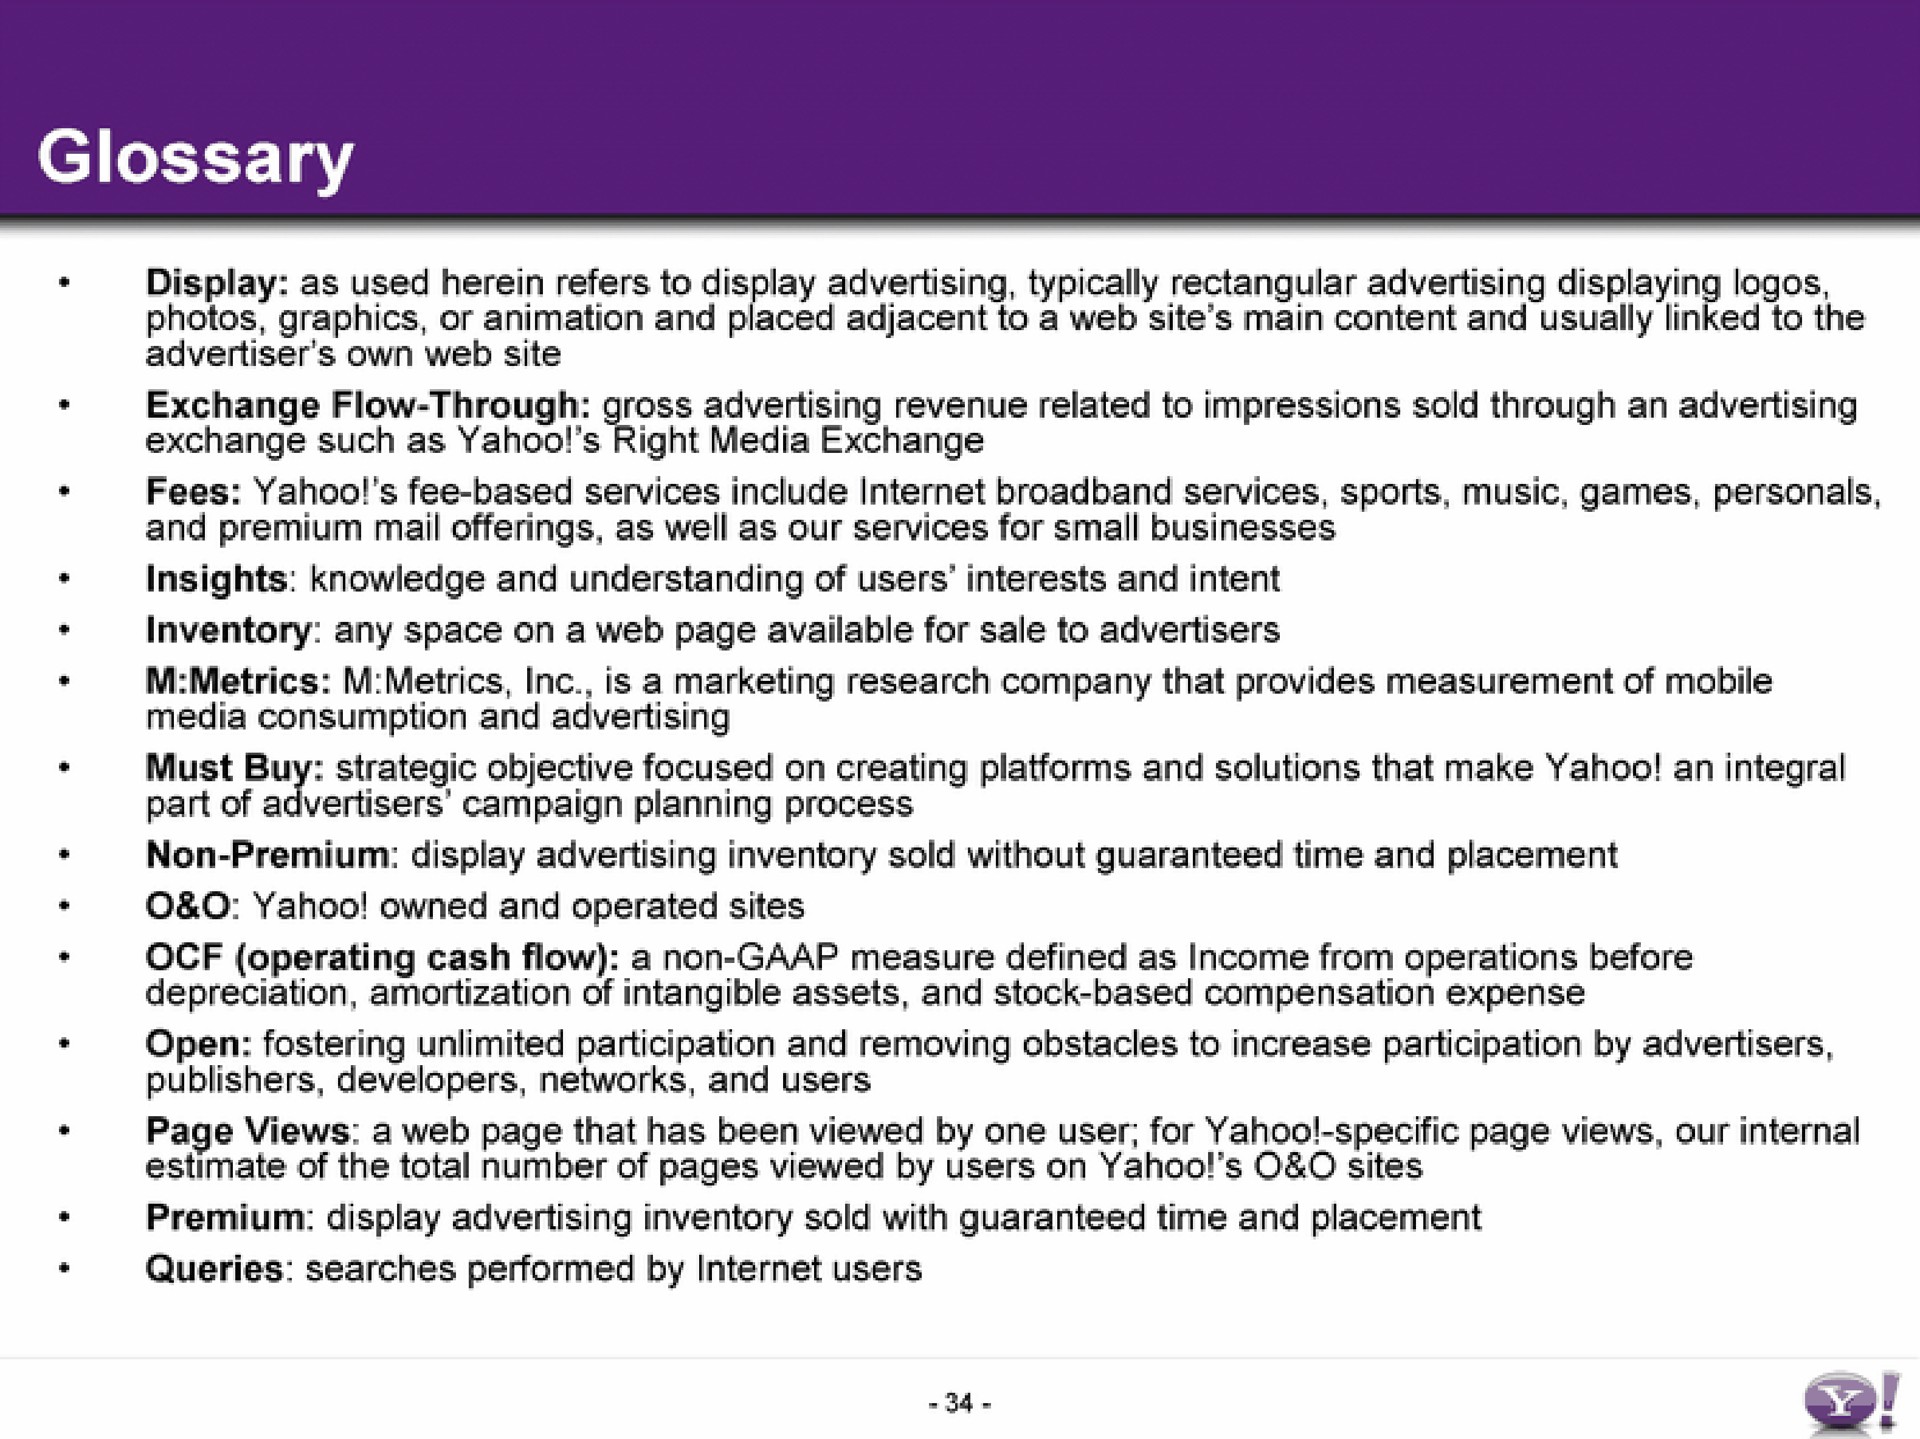 glossary | Yahoo